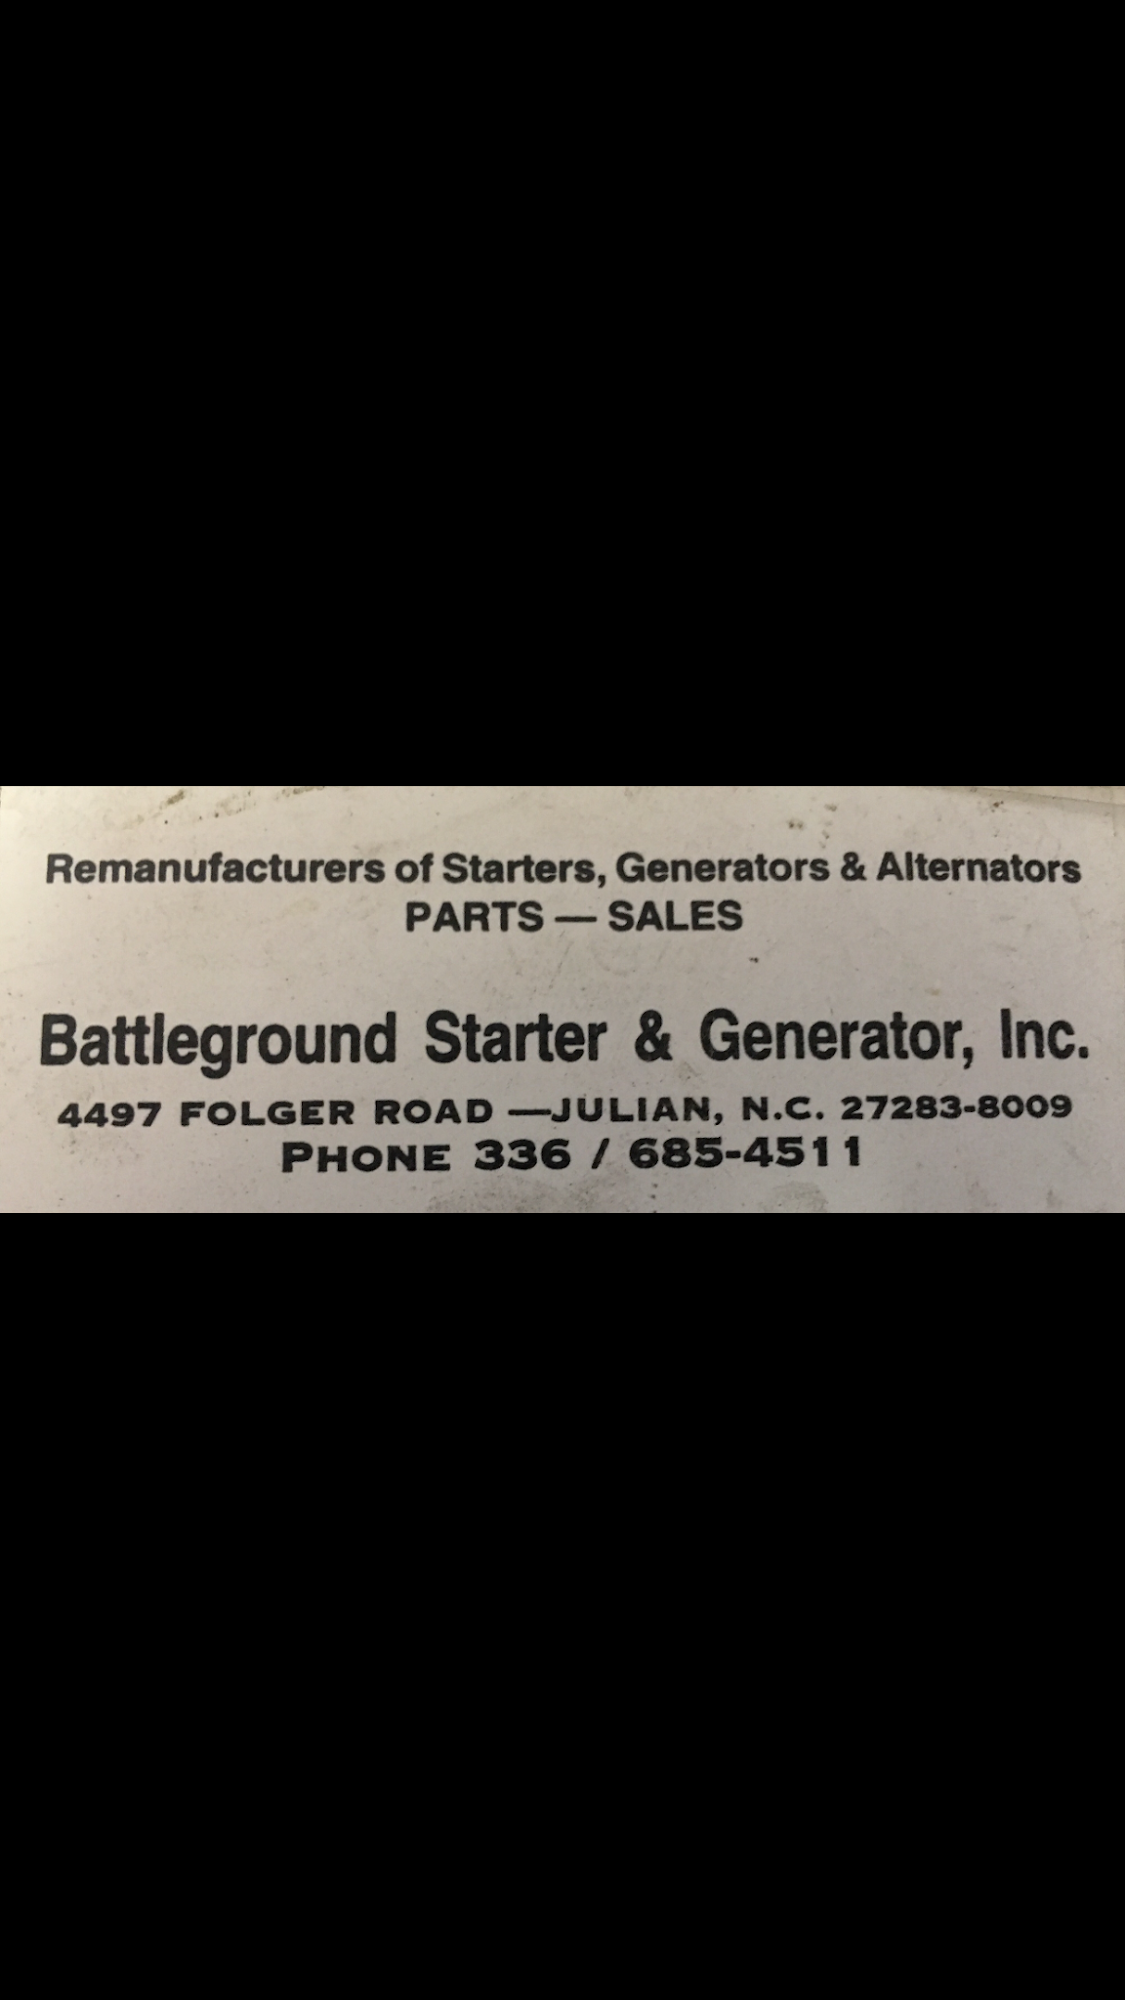 Battleground Starter & Generator